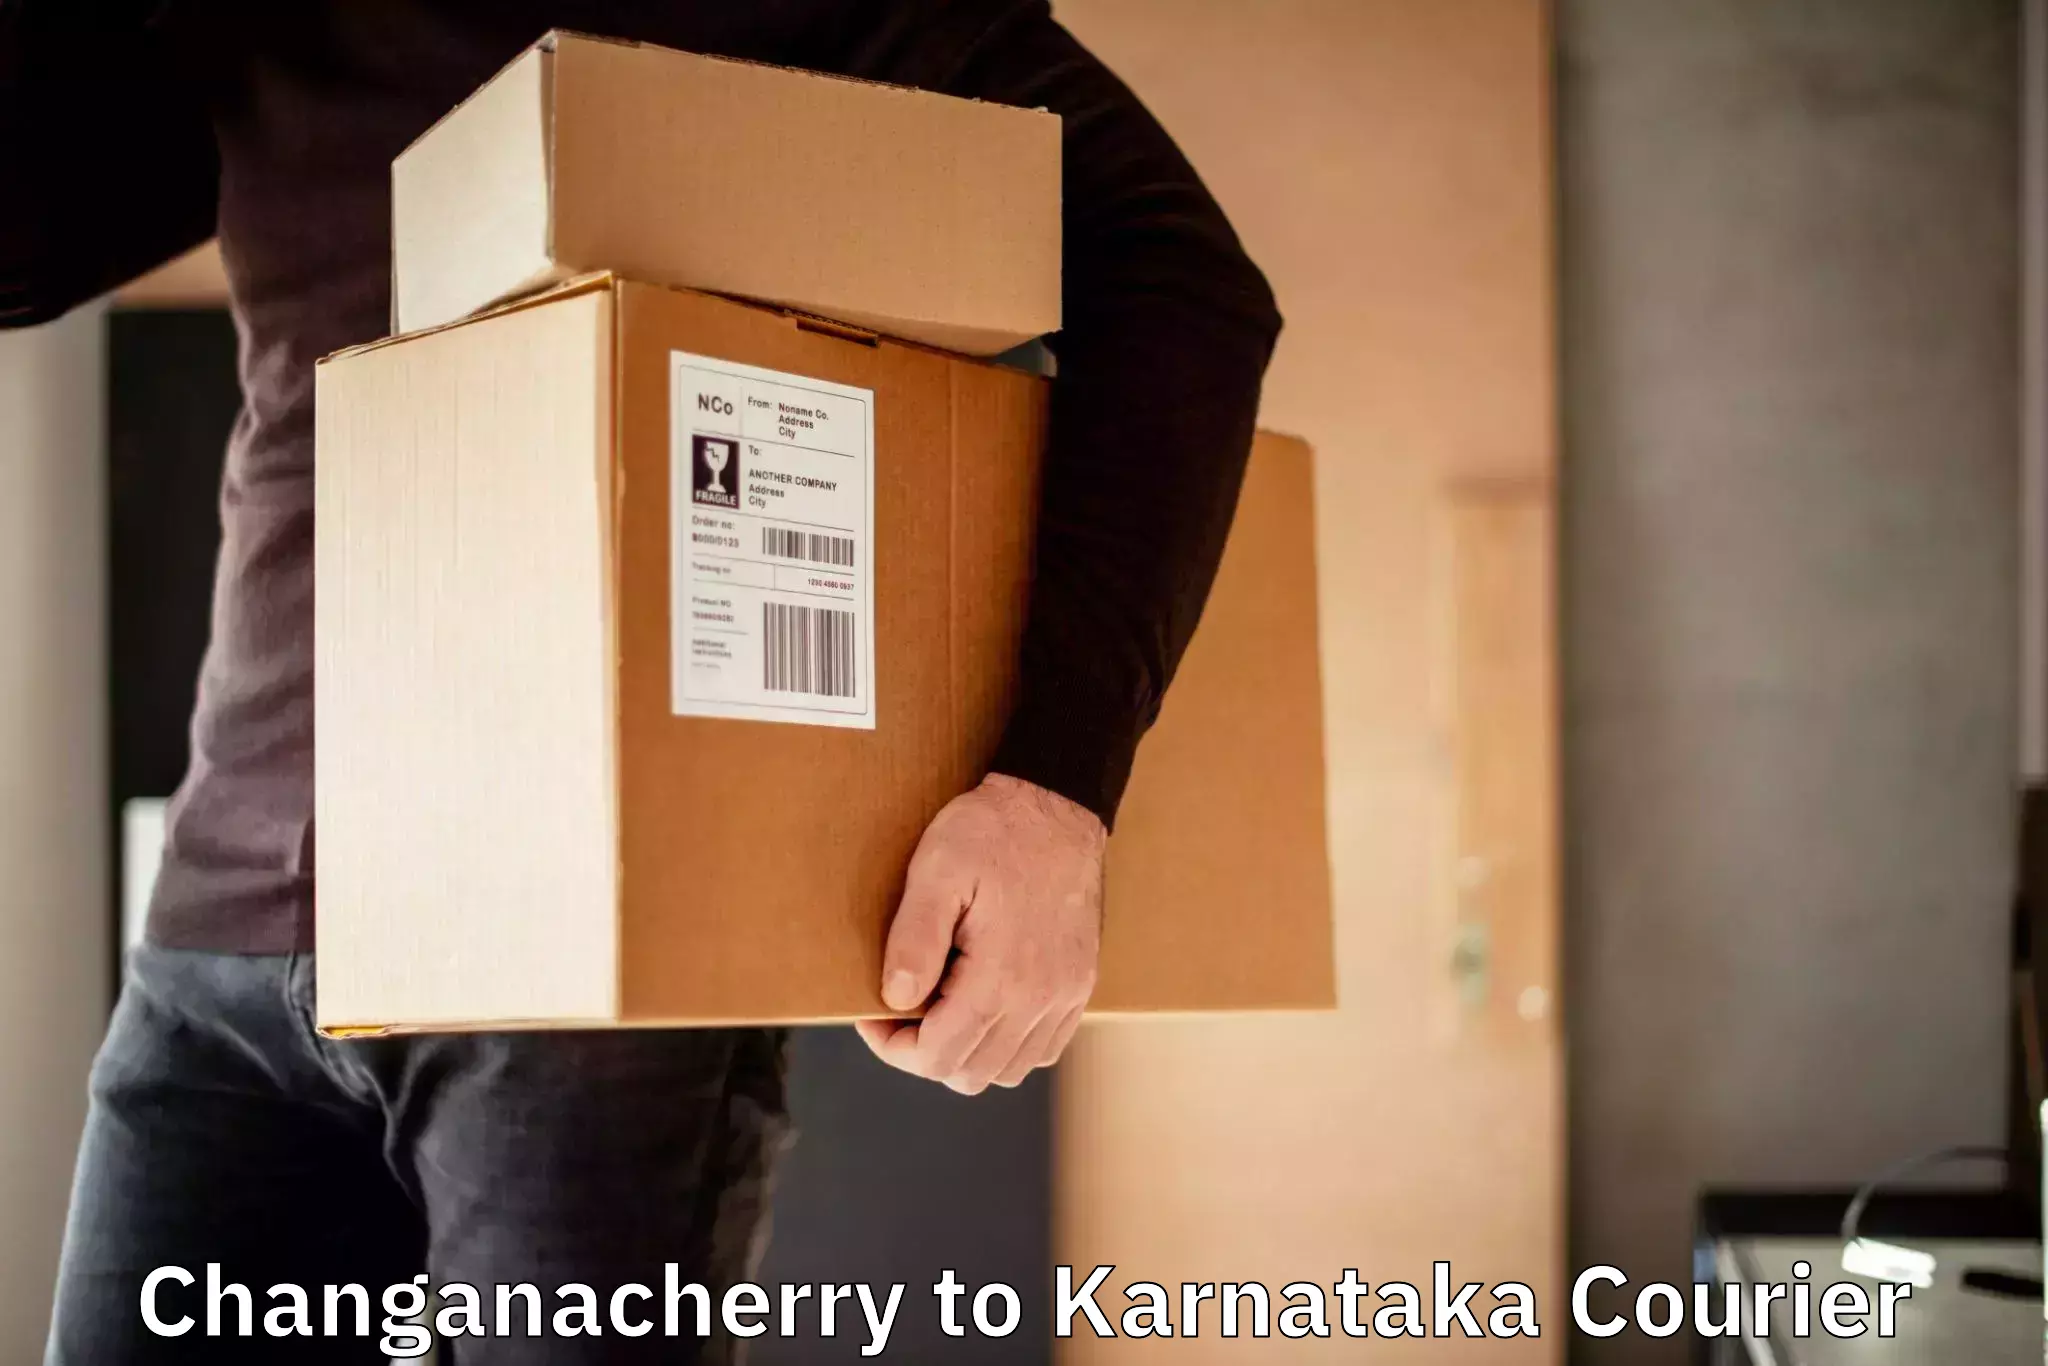 Nationwide courier service Changanacherry to Toranagallu